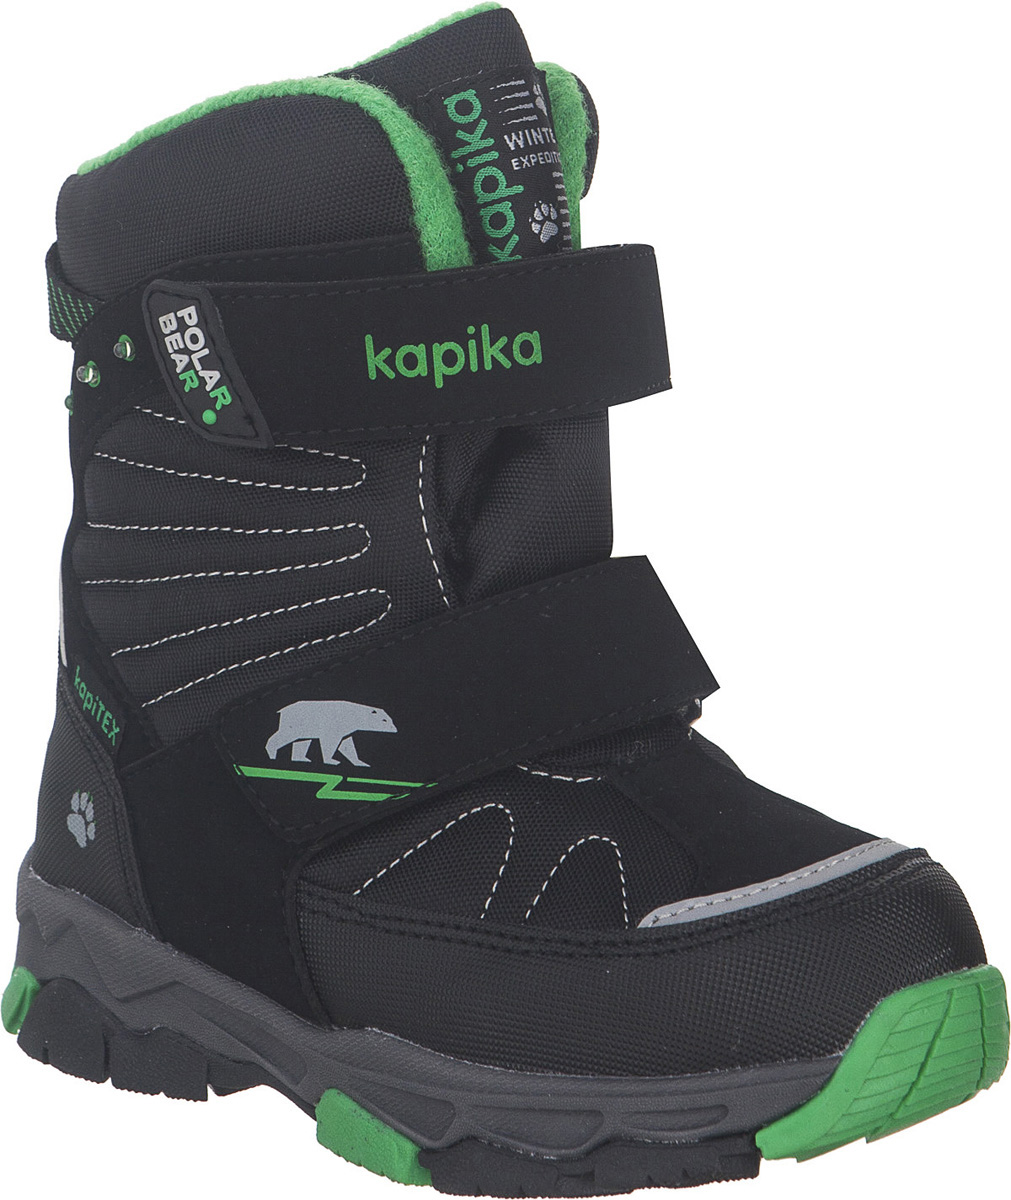 Ботинки для мальчика Kapika KapiTEX, цвет: черный, зеленый. 42235-1. Размер 29